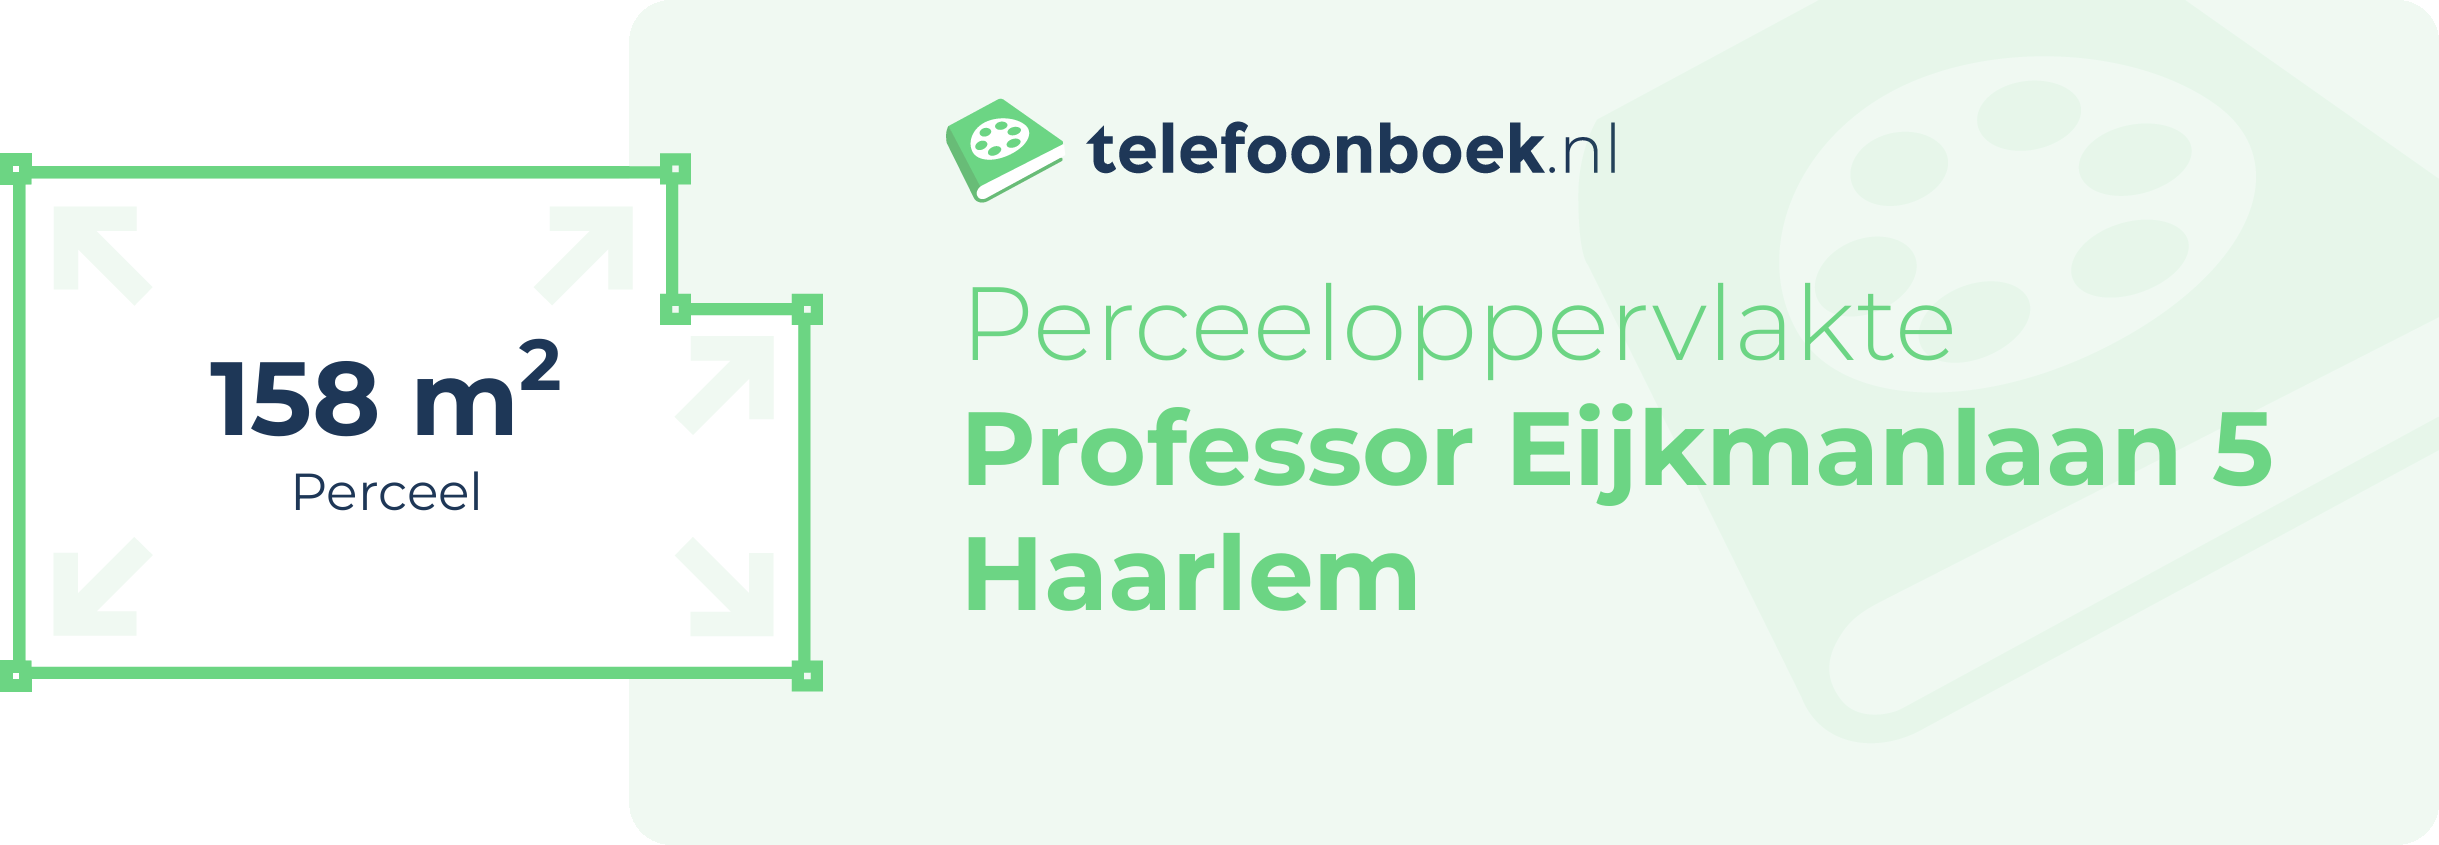 Perceeloppervlakte Professor Eijkmanlaan 5 Haarlem